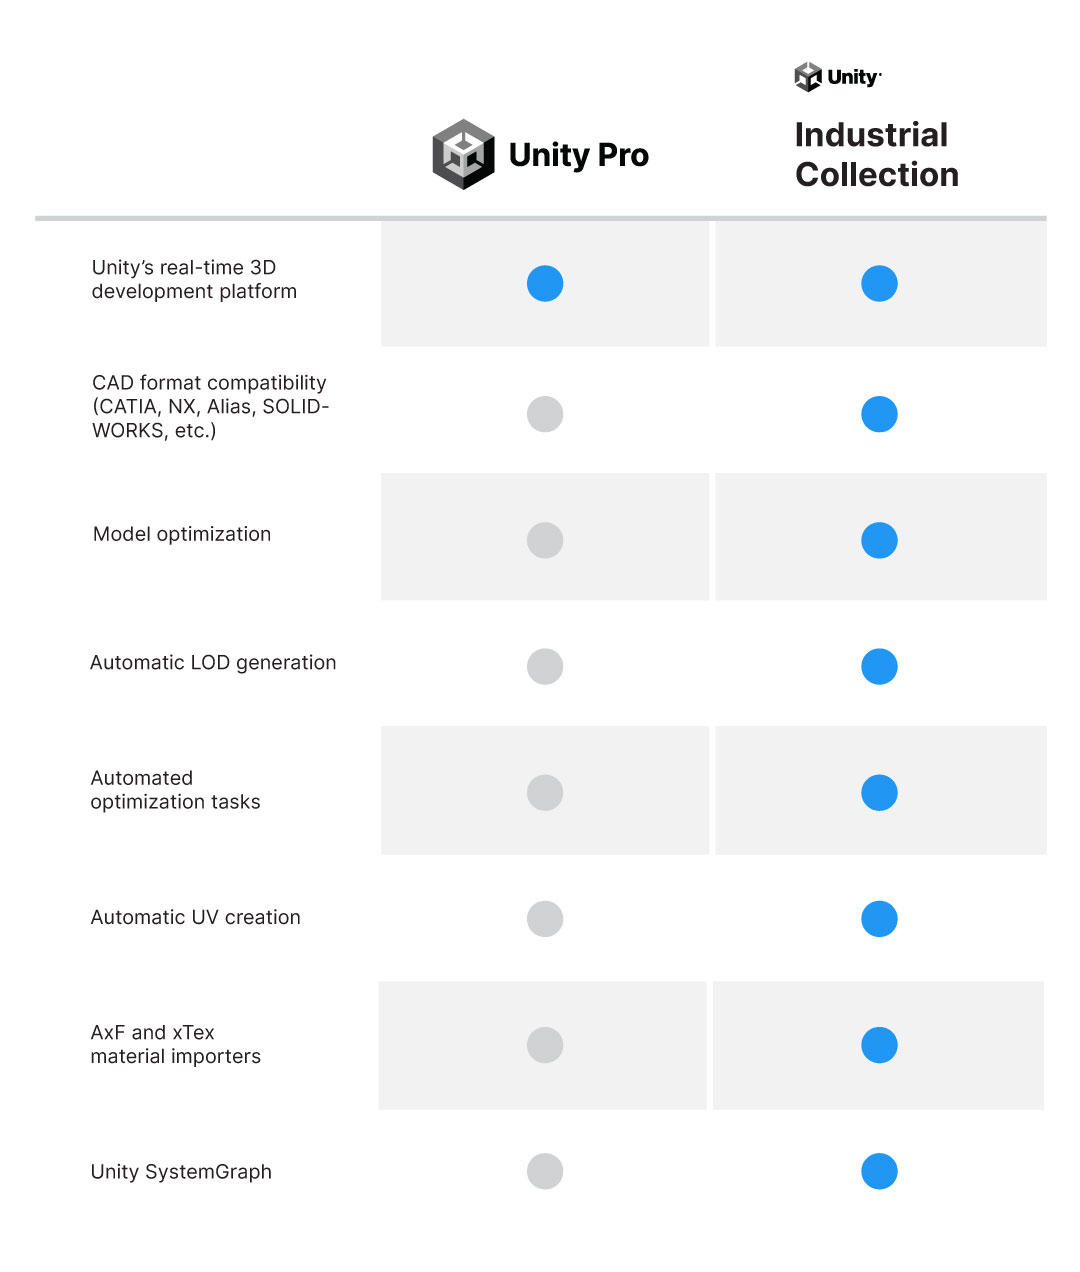 Gráfico comparativo entre Unity Pro e UIC